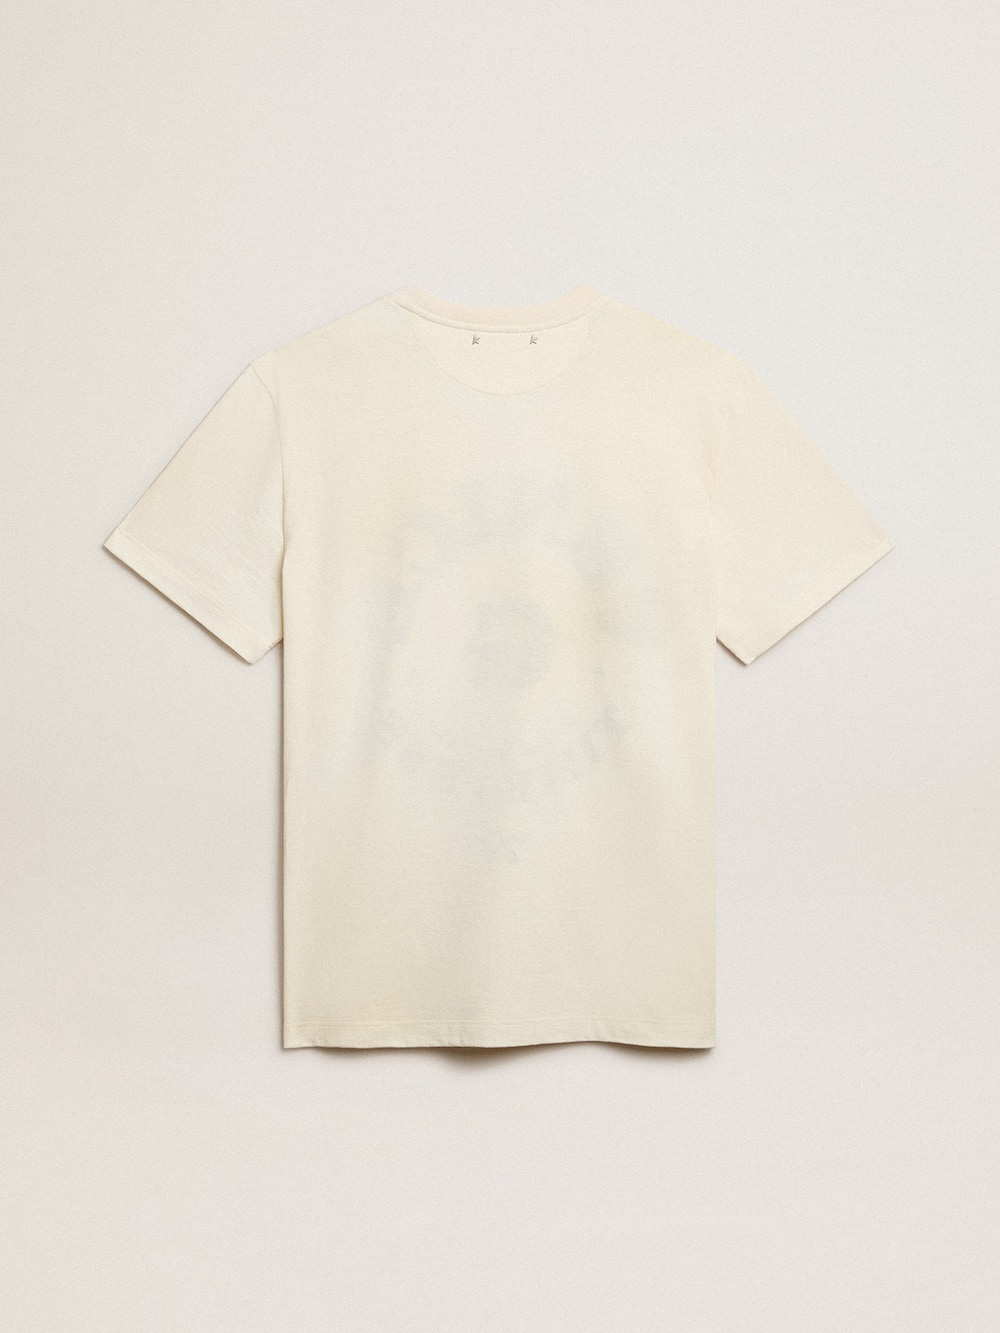 Golden Goose - Camiseta de hombre en algodón blanco envejecido con mensaje descolorido  in 